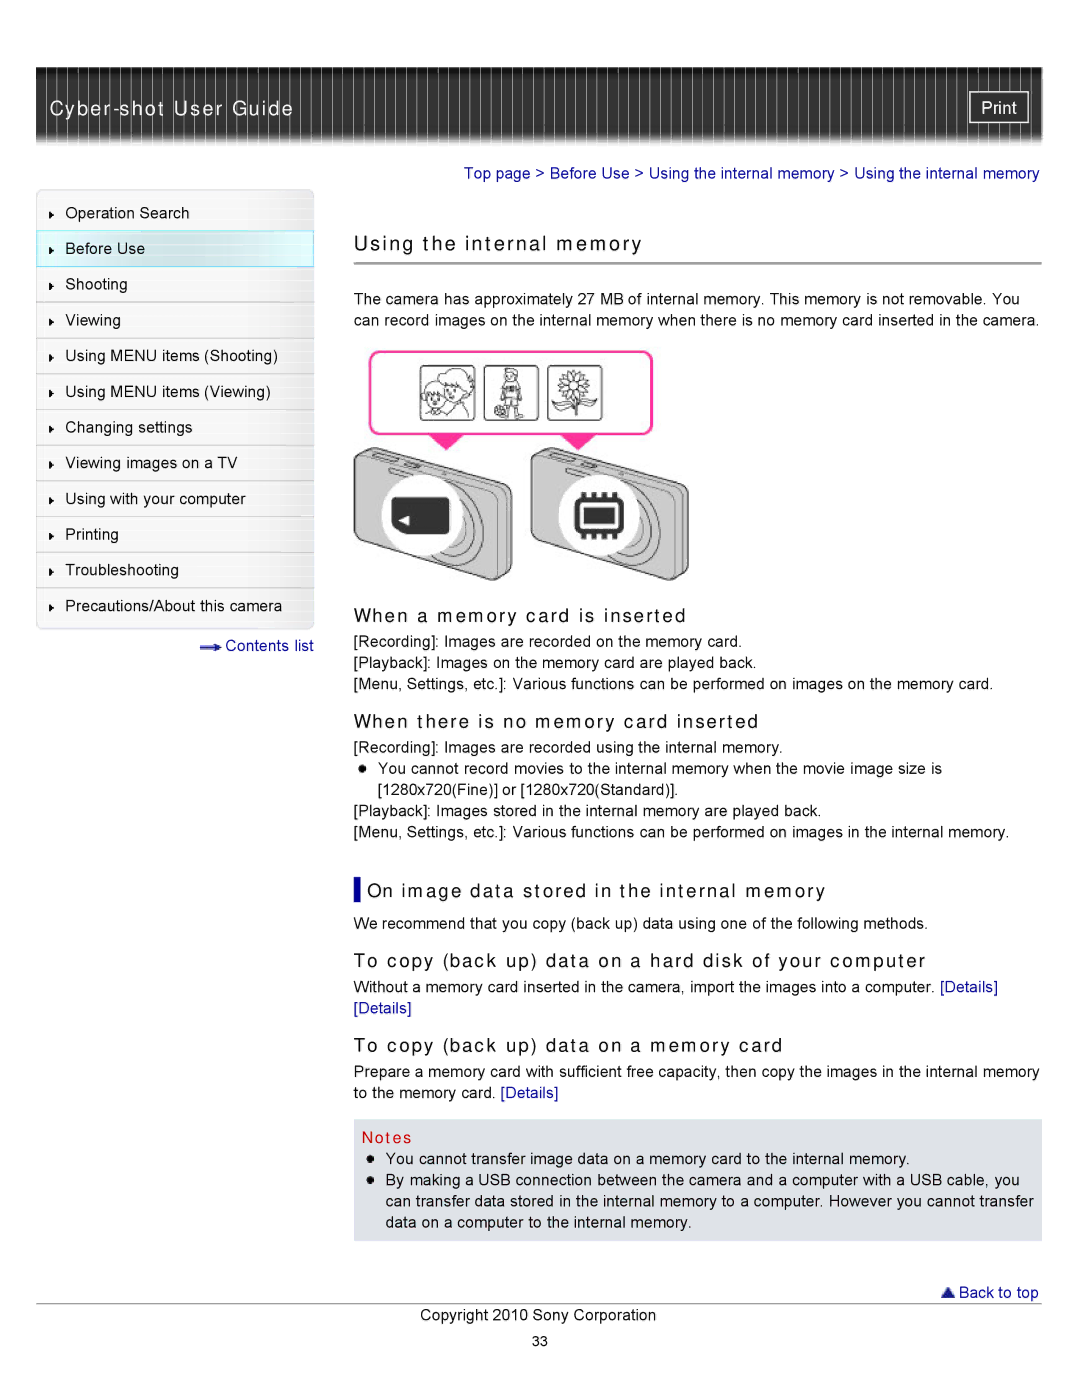 Sony DSC-W580, DSC-W570D manual Using the internal memory 